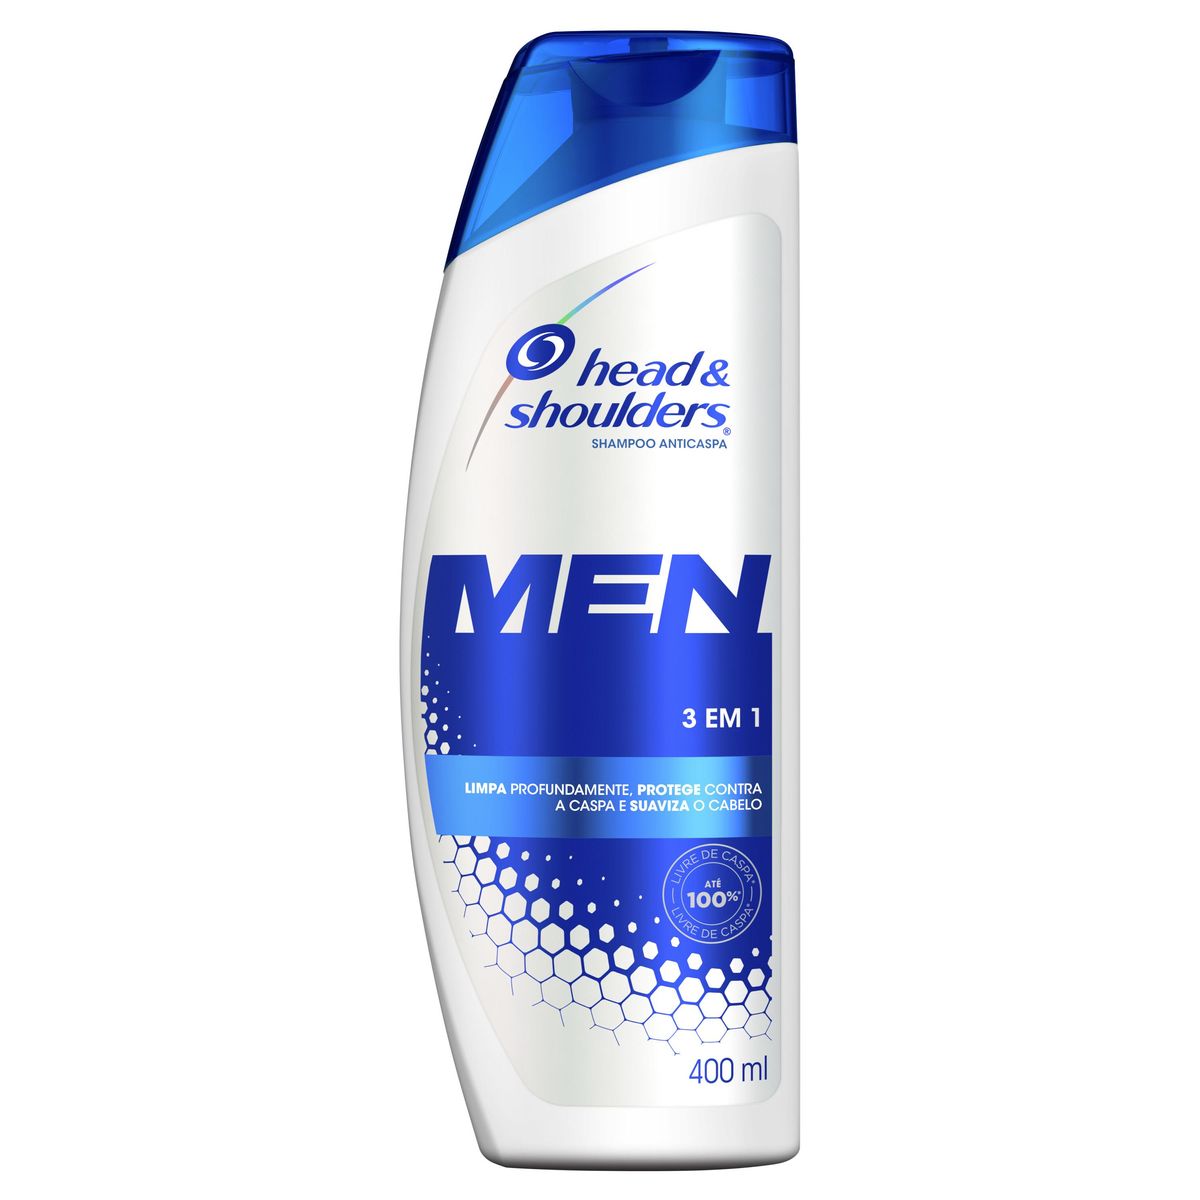 Shampoo de Cuidados com a Raiz Head & Shoulders Men 3em1 400ml